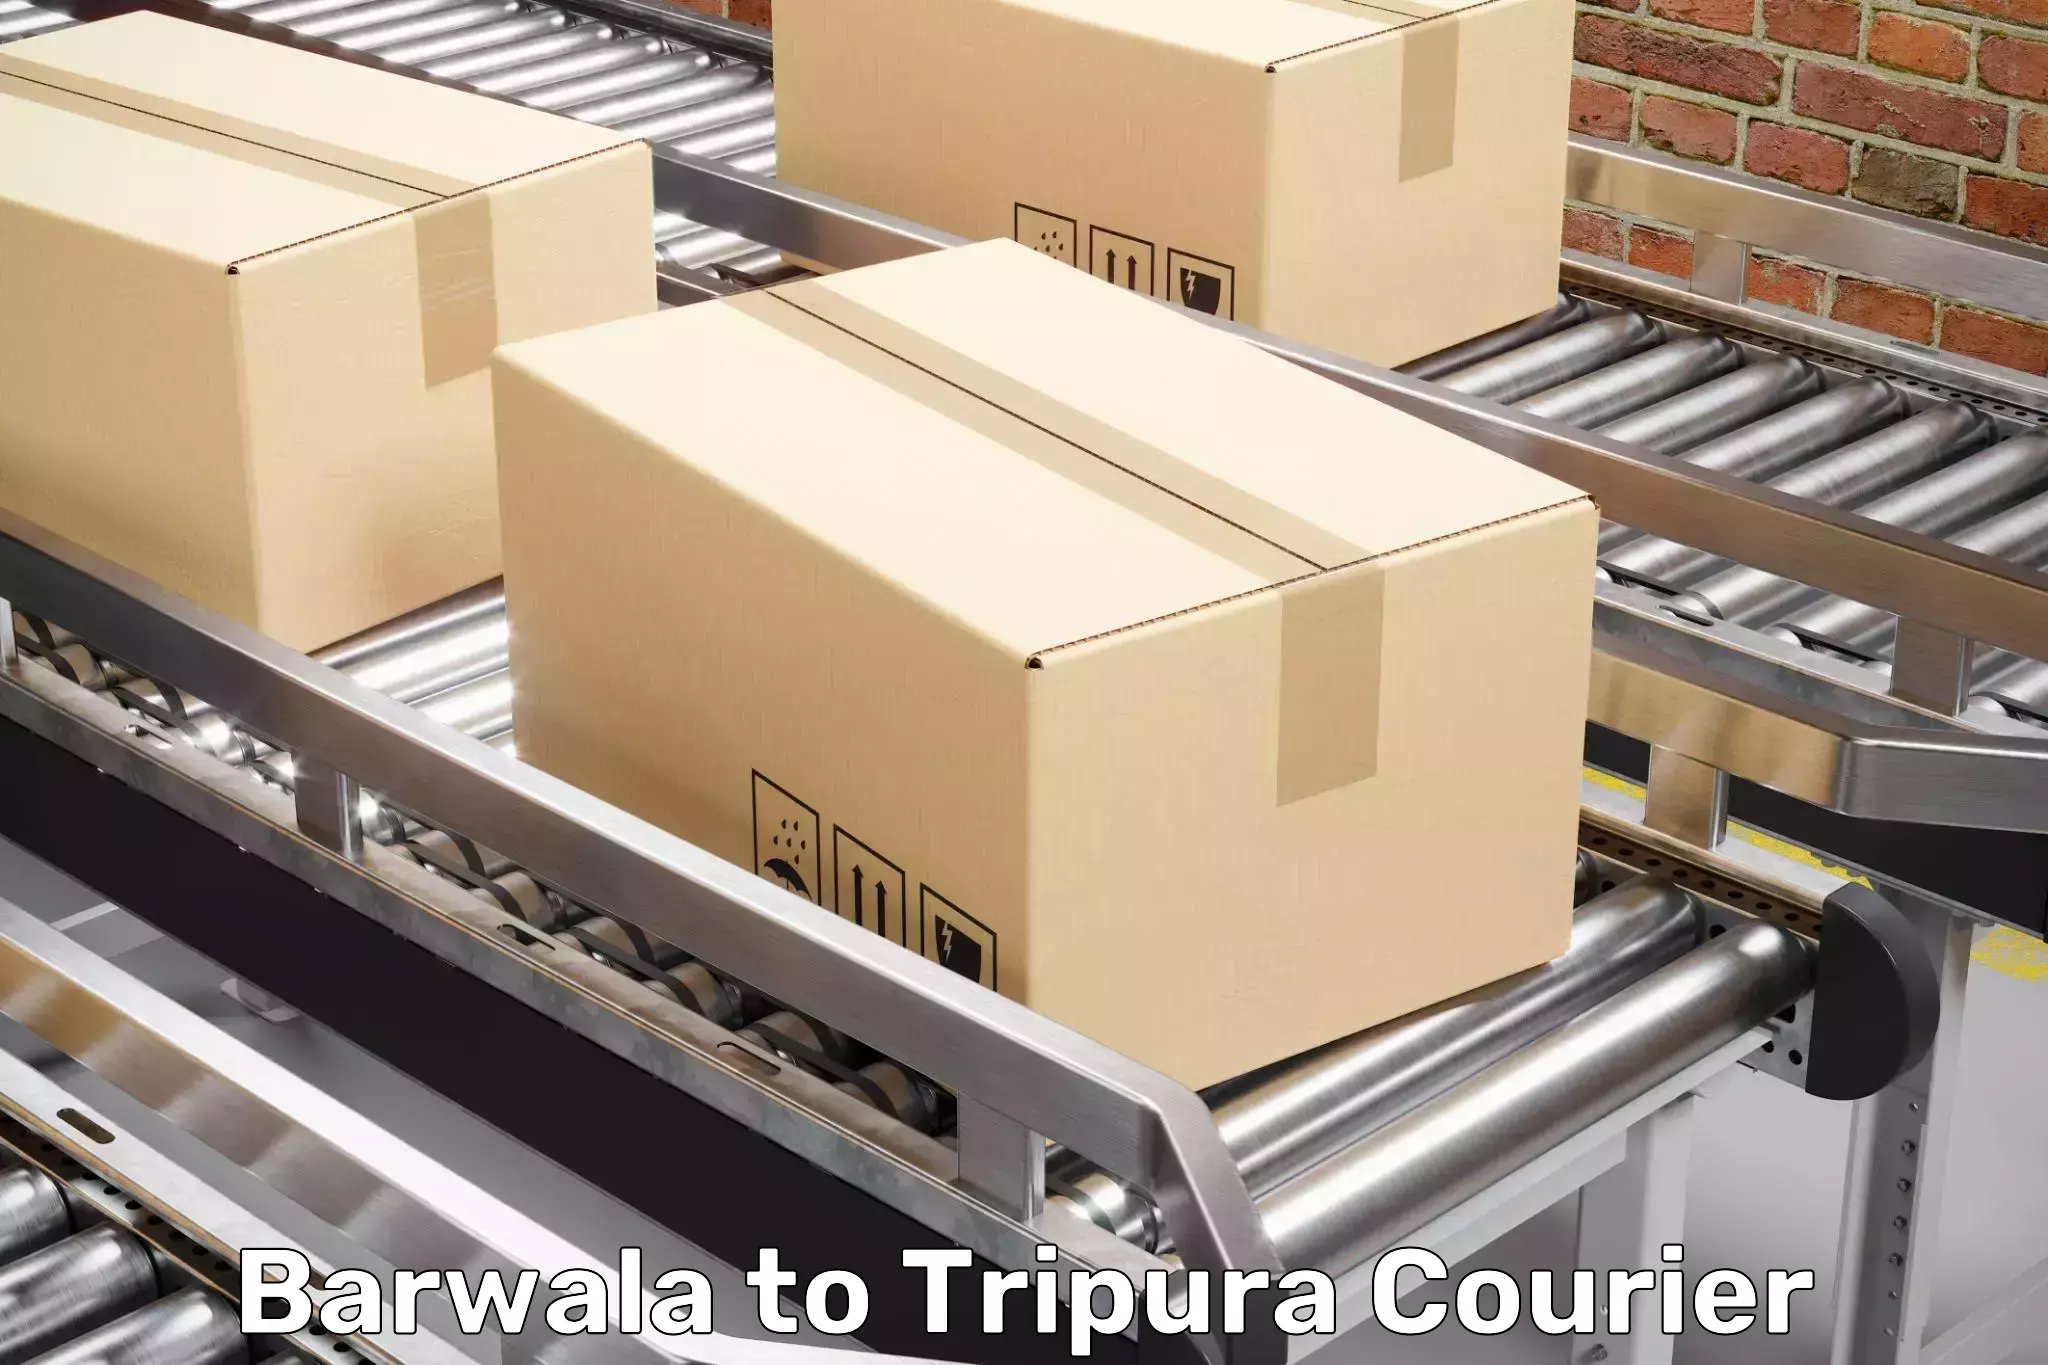 Furniture transport experts Barwala to Manughat